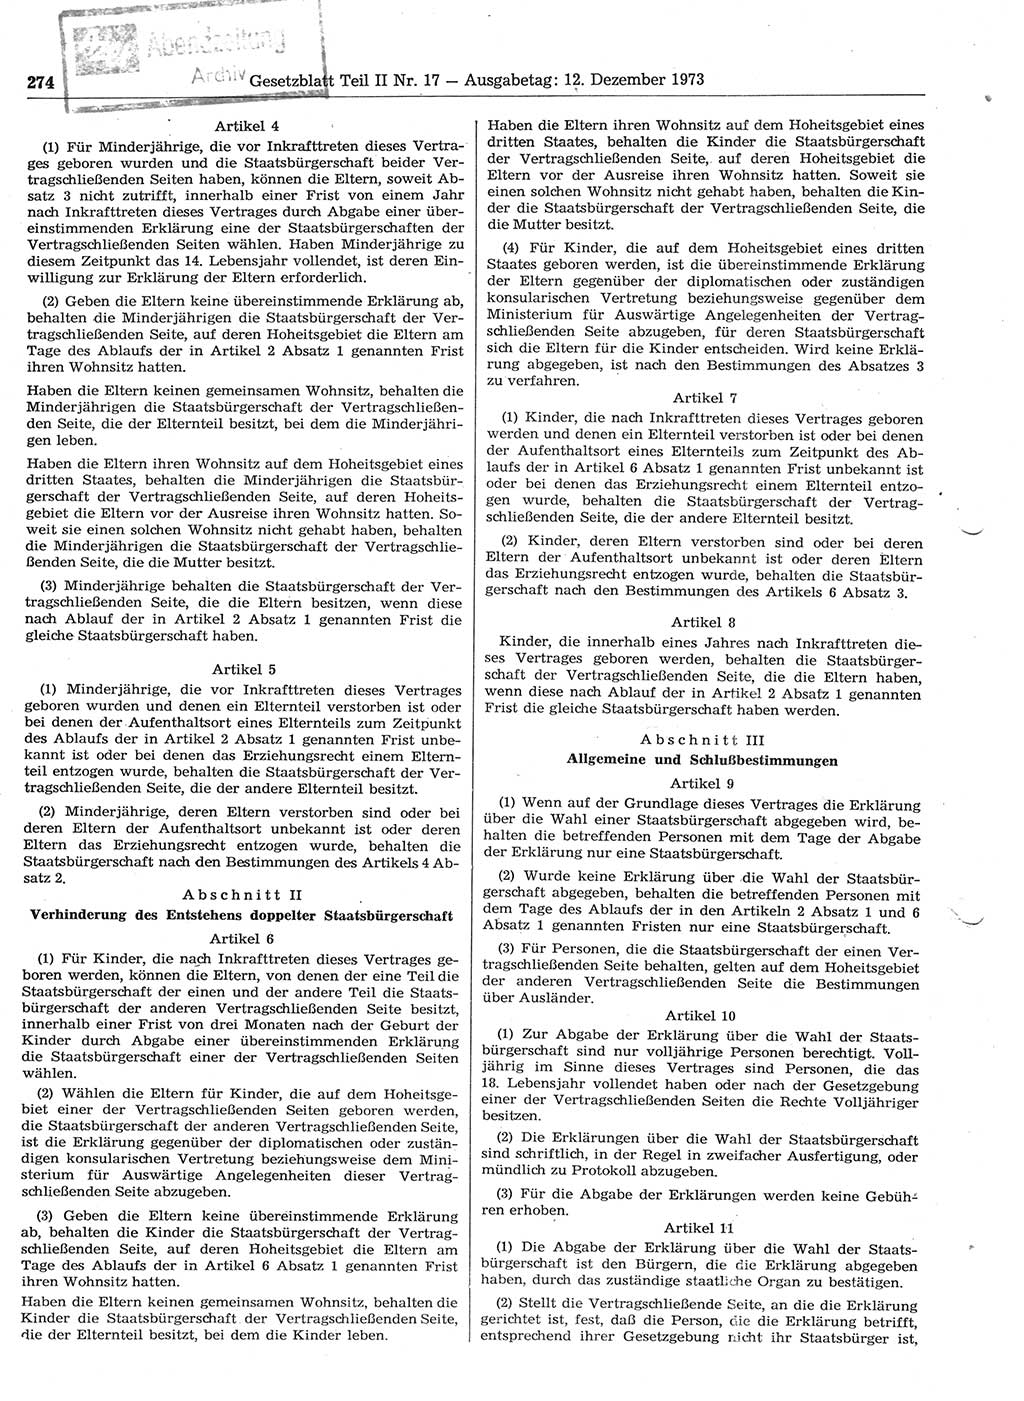 Gesetzblatt (GBl.) der Deutschen Demokratischen Republik (DDR) Teil ⅠⅠ 1973, Seite 274 (GBl. DDR ⅠⅠ 1973, S. 274)